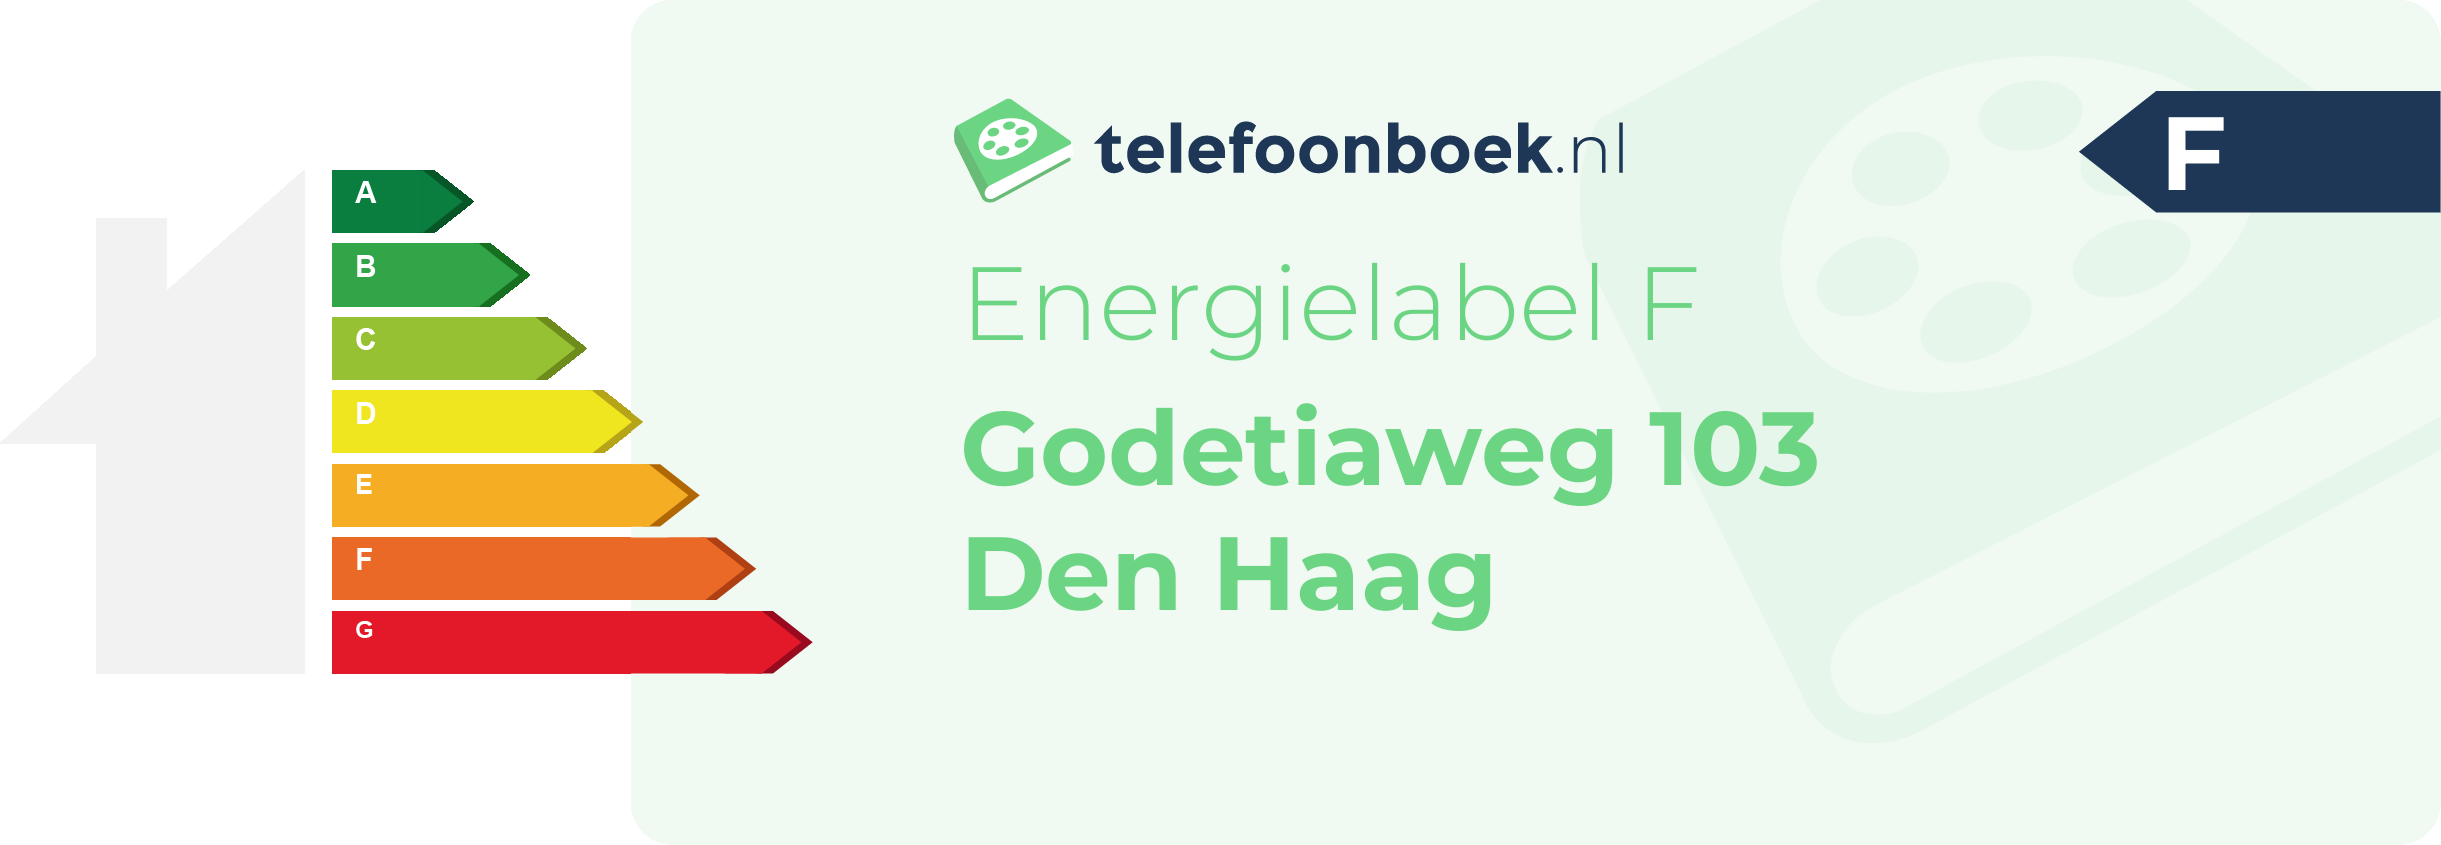 Energielabel Godetiaweg 103 Den Haag